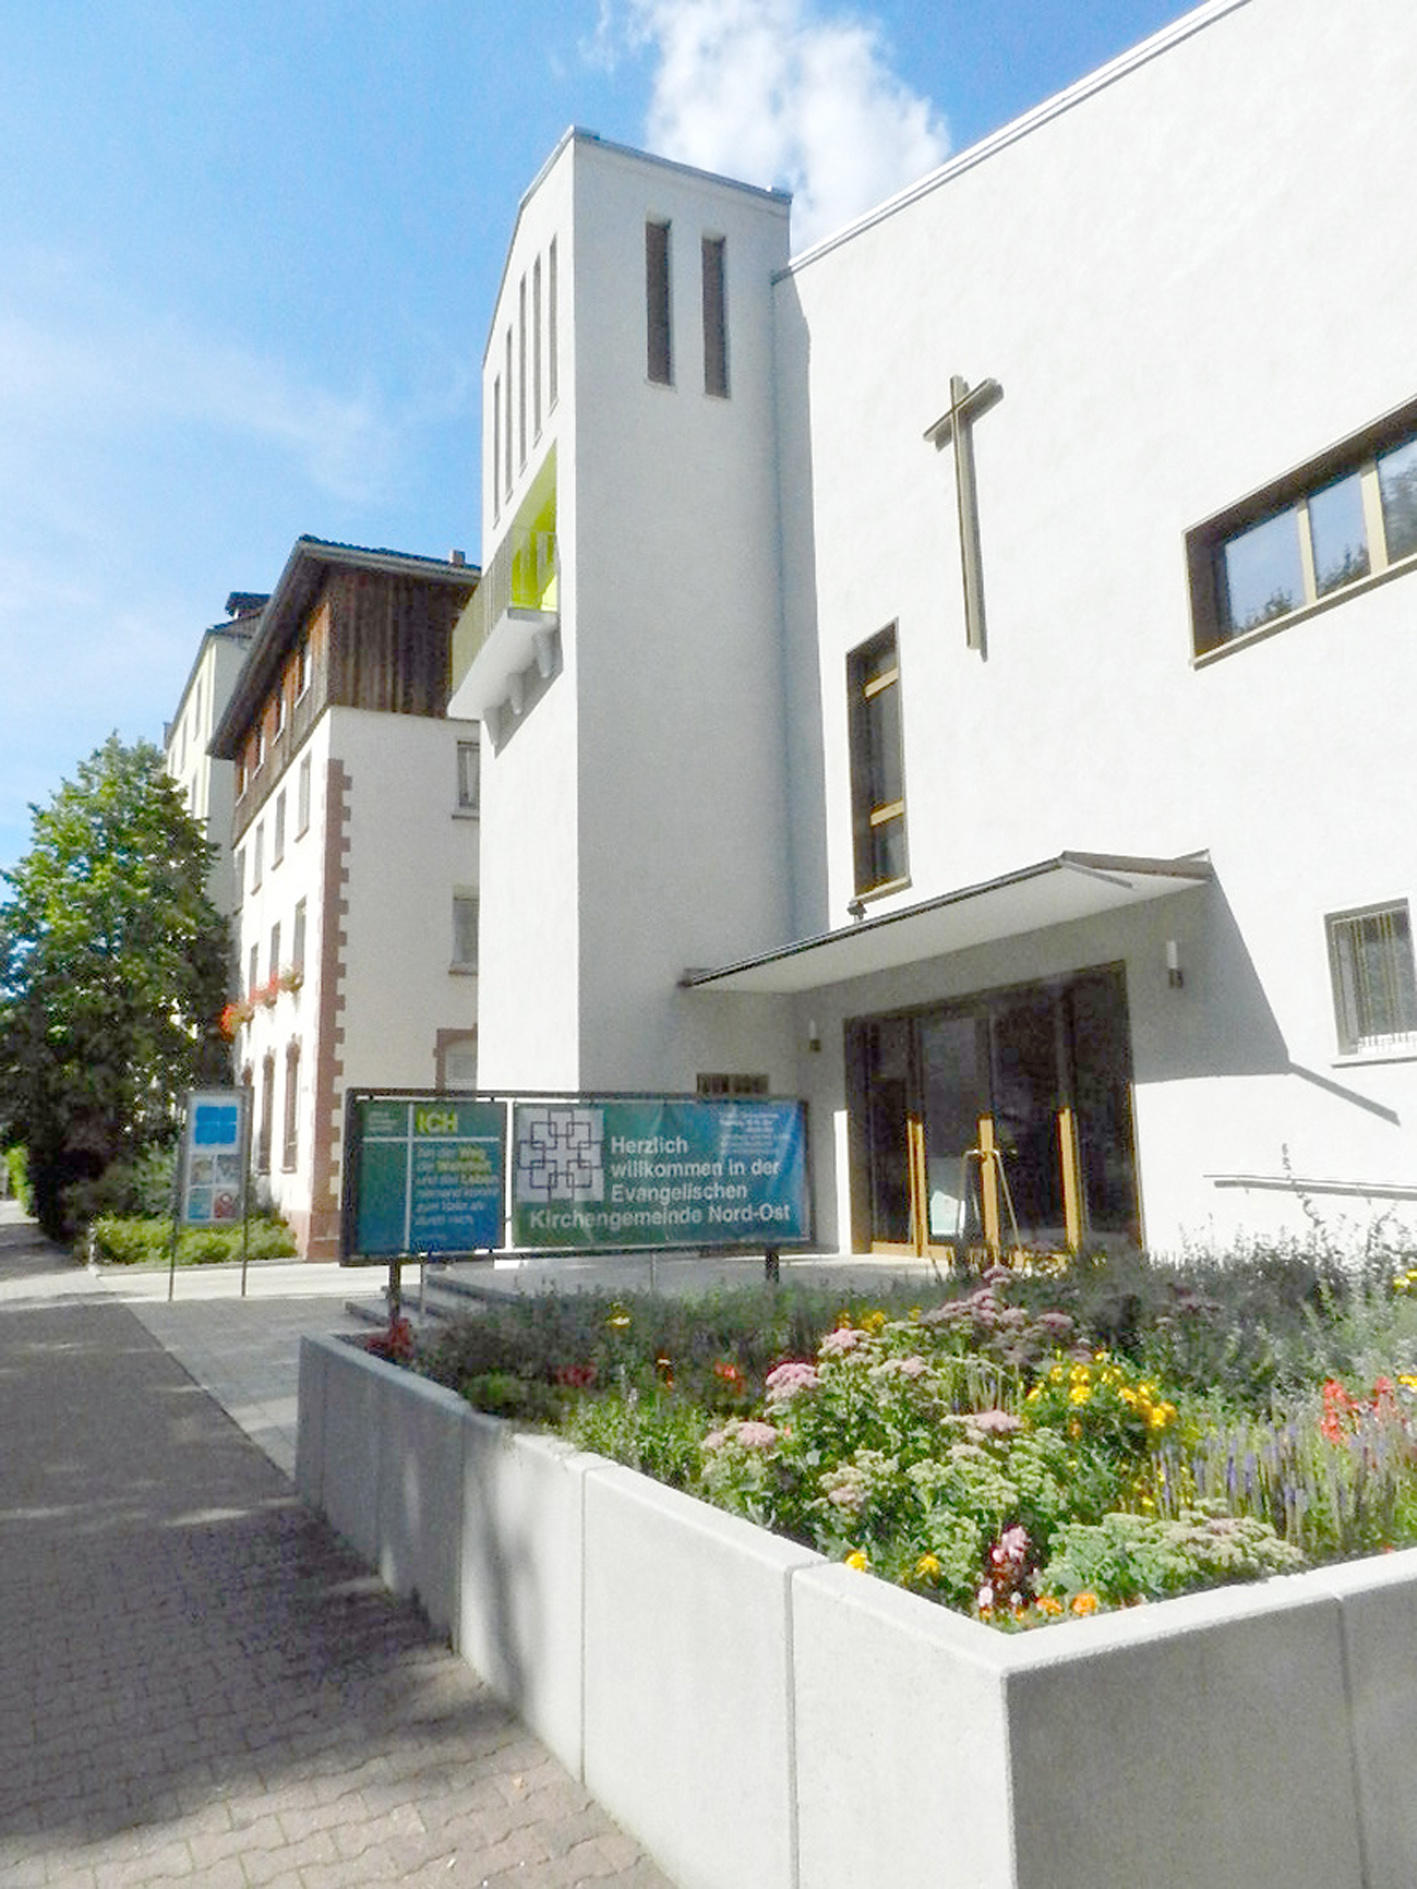 Bild 1 Nord-Ost Kirche - Evangelische Personalkirchengemeinde Nord-Ost Frankfurt/Main in Frankfurt/Main